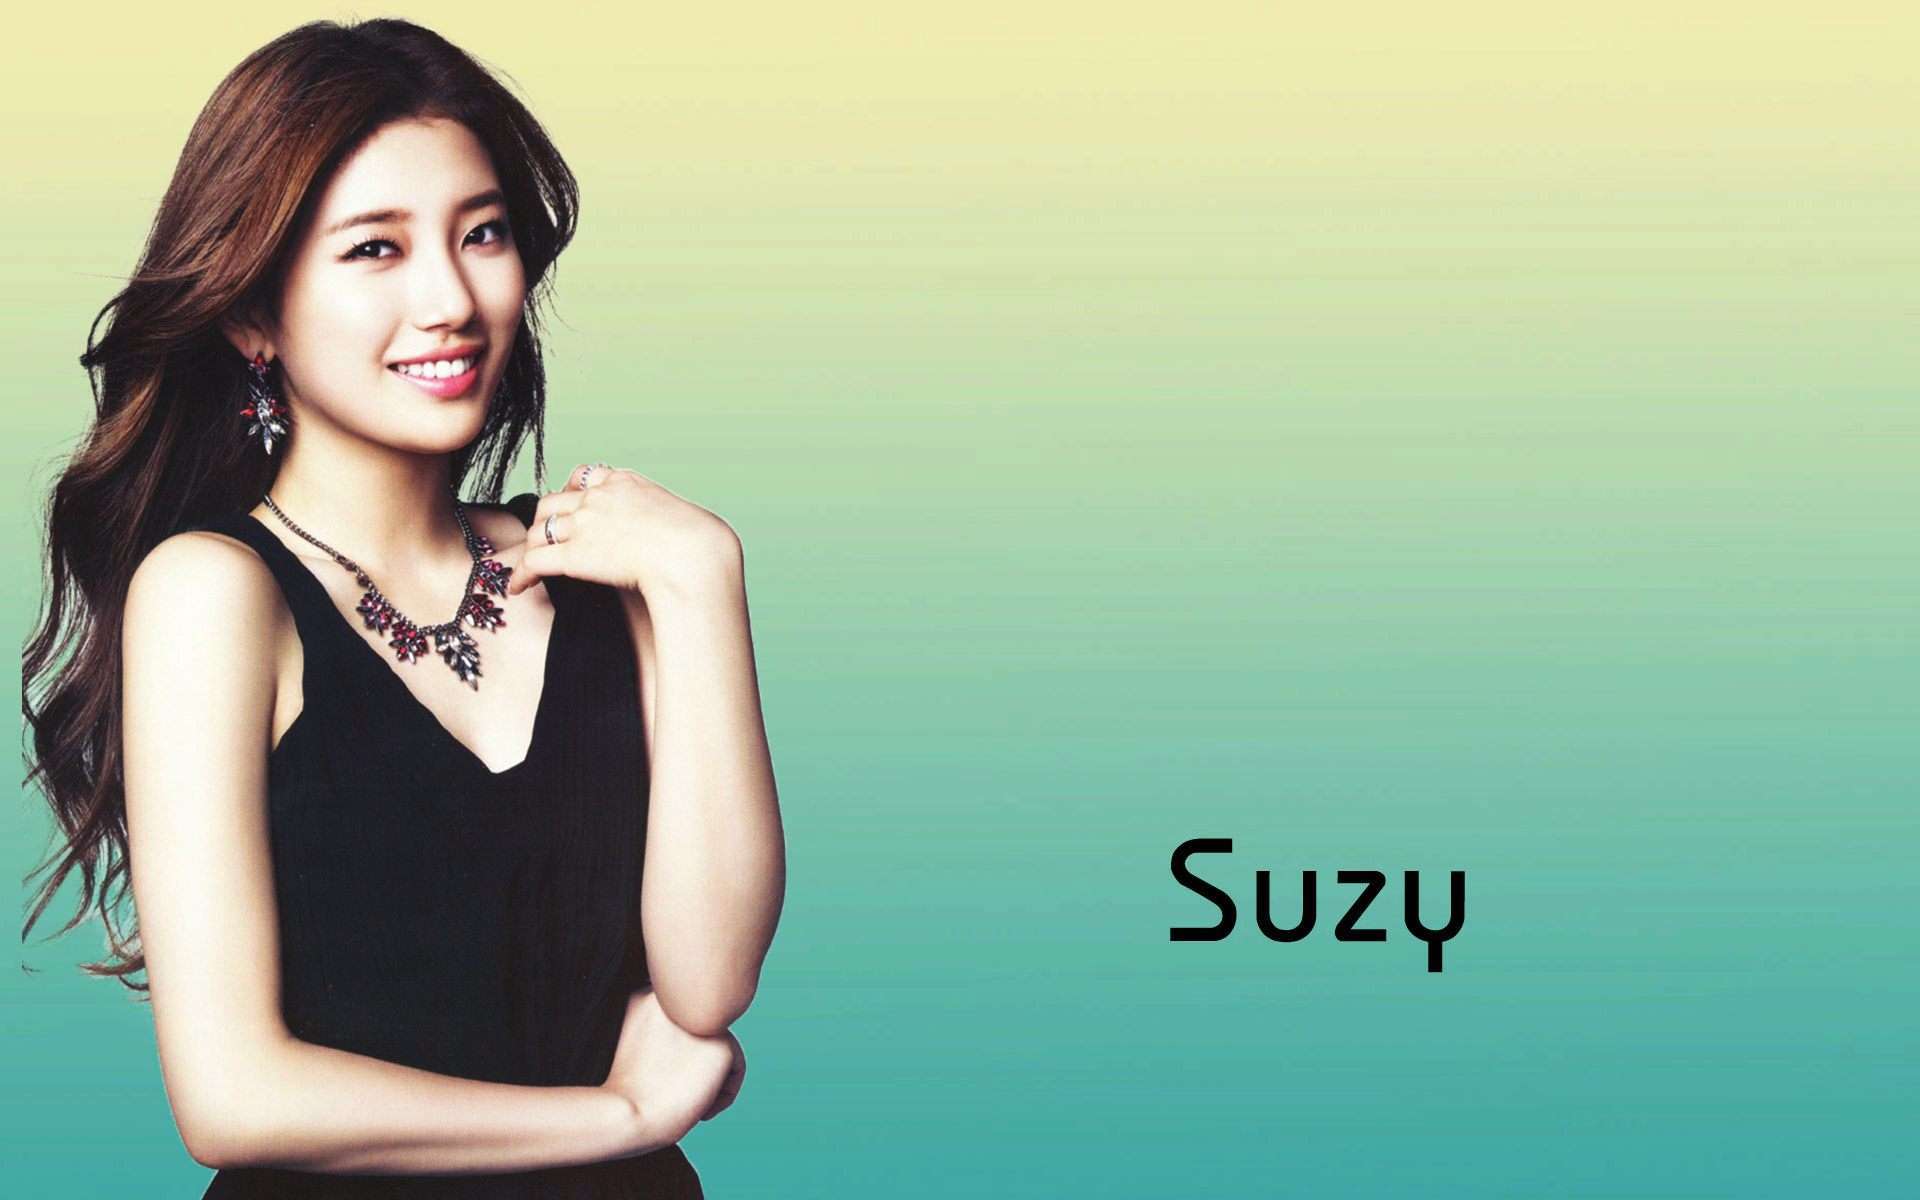 Bae Suzy Wallpaper Pack 628: Bae Suzy Wallpaper, 40 Bae Suzy